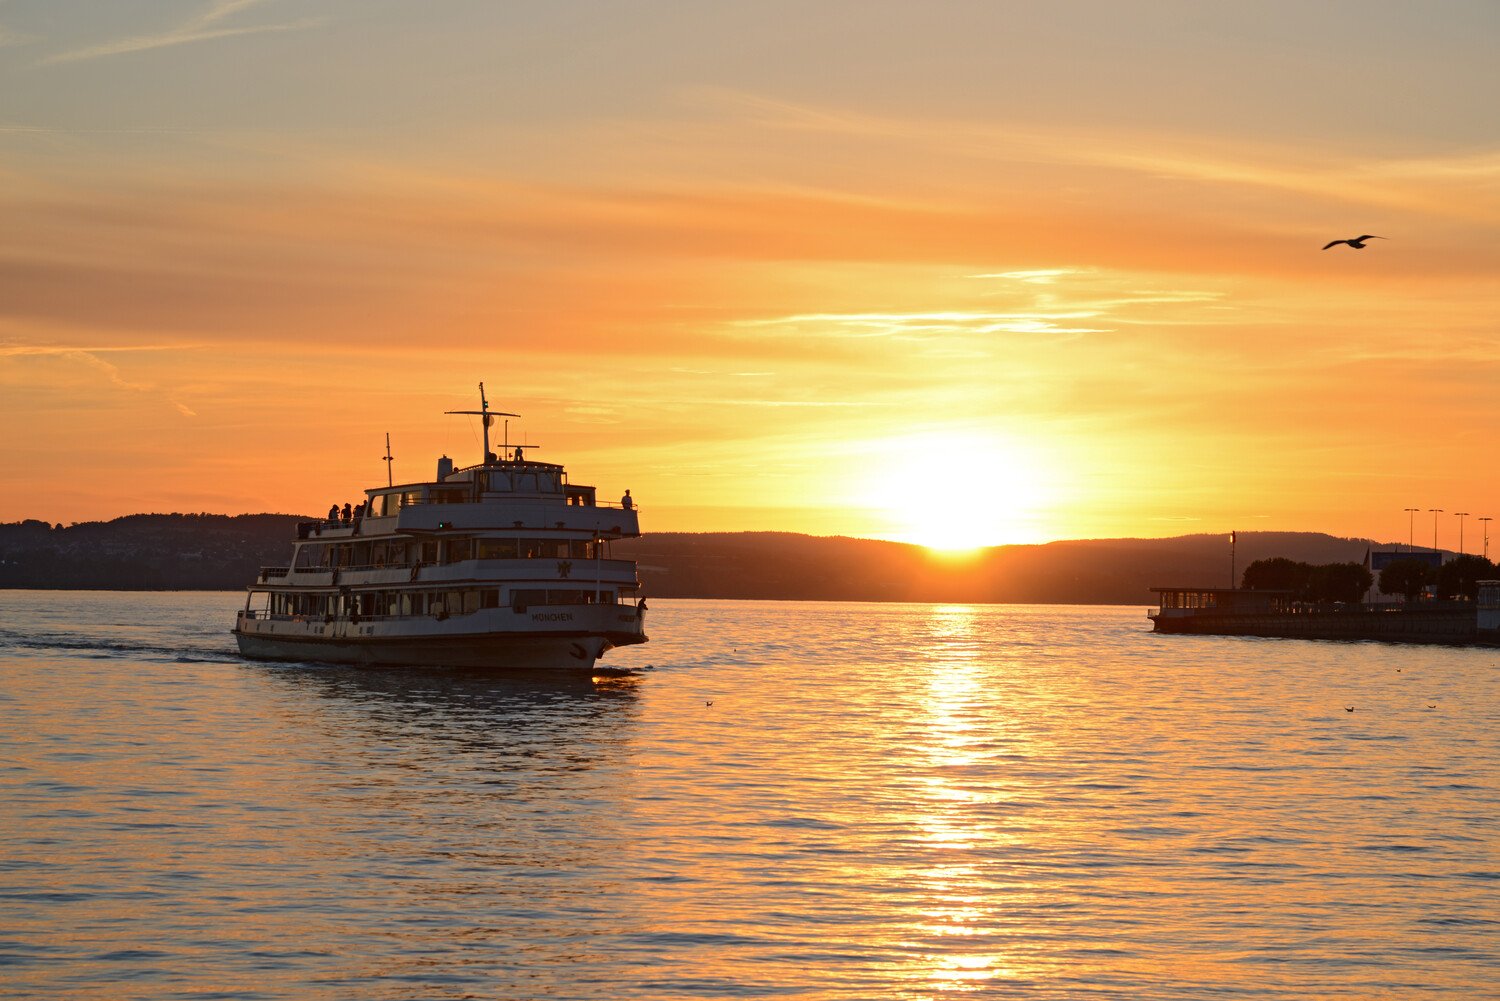 Schifffahrt auf dem Bodensee bei Sonnenuntergang